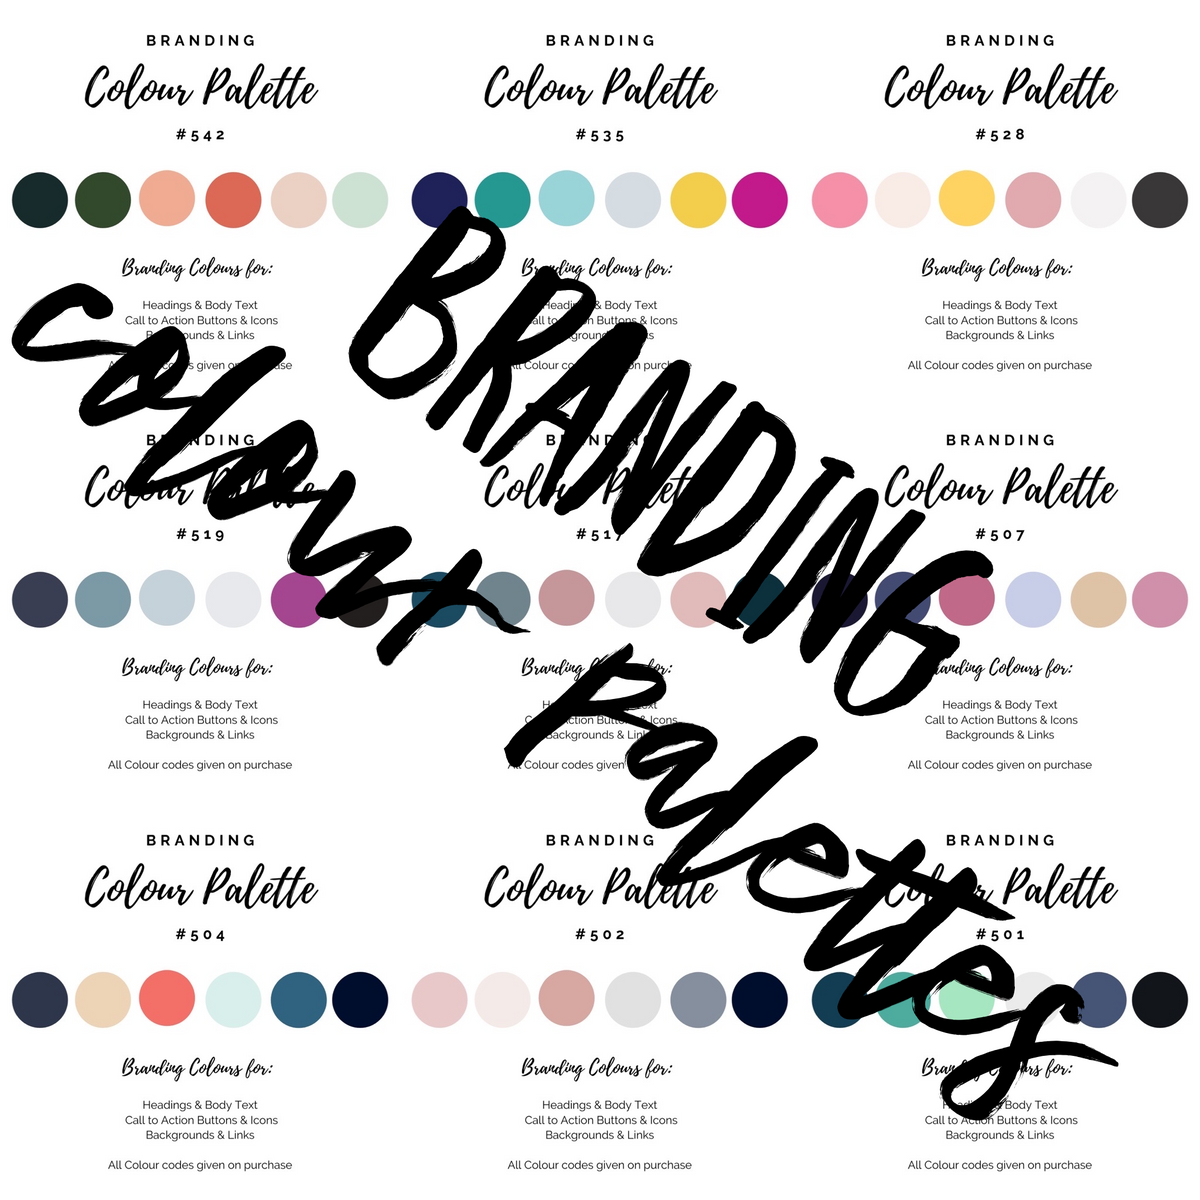 Branding Colour Palettes - 46 Templates